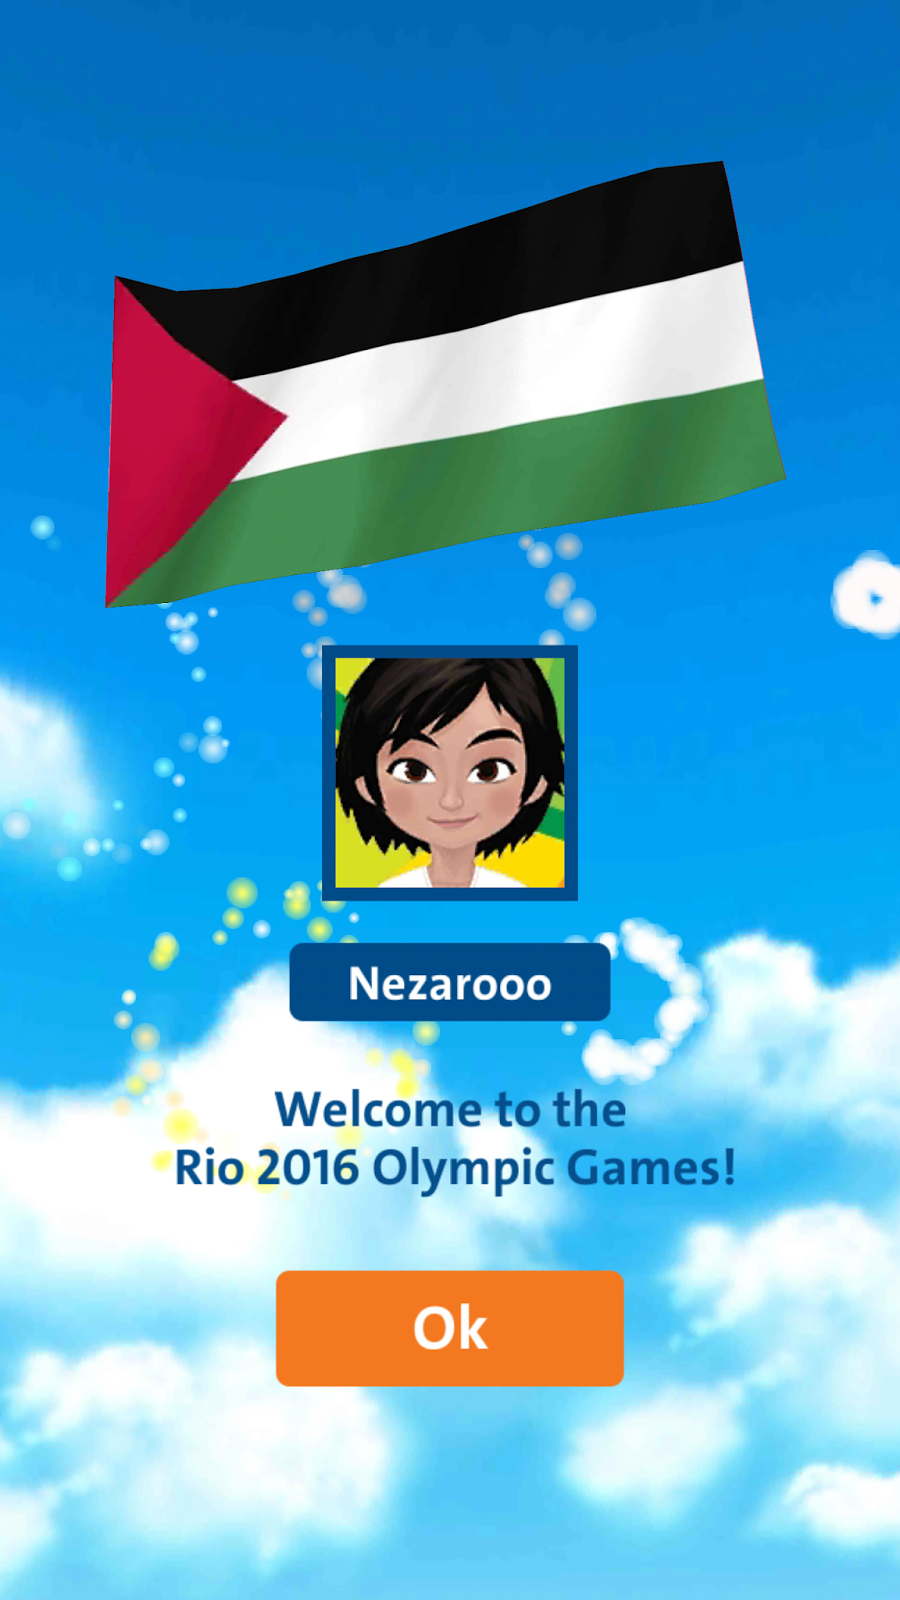 لعبة الأولمبياد Rio 2016 شارك في الالعاب الالومبية وانت جالس في بيتك | بحرية درويد